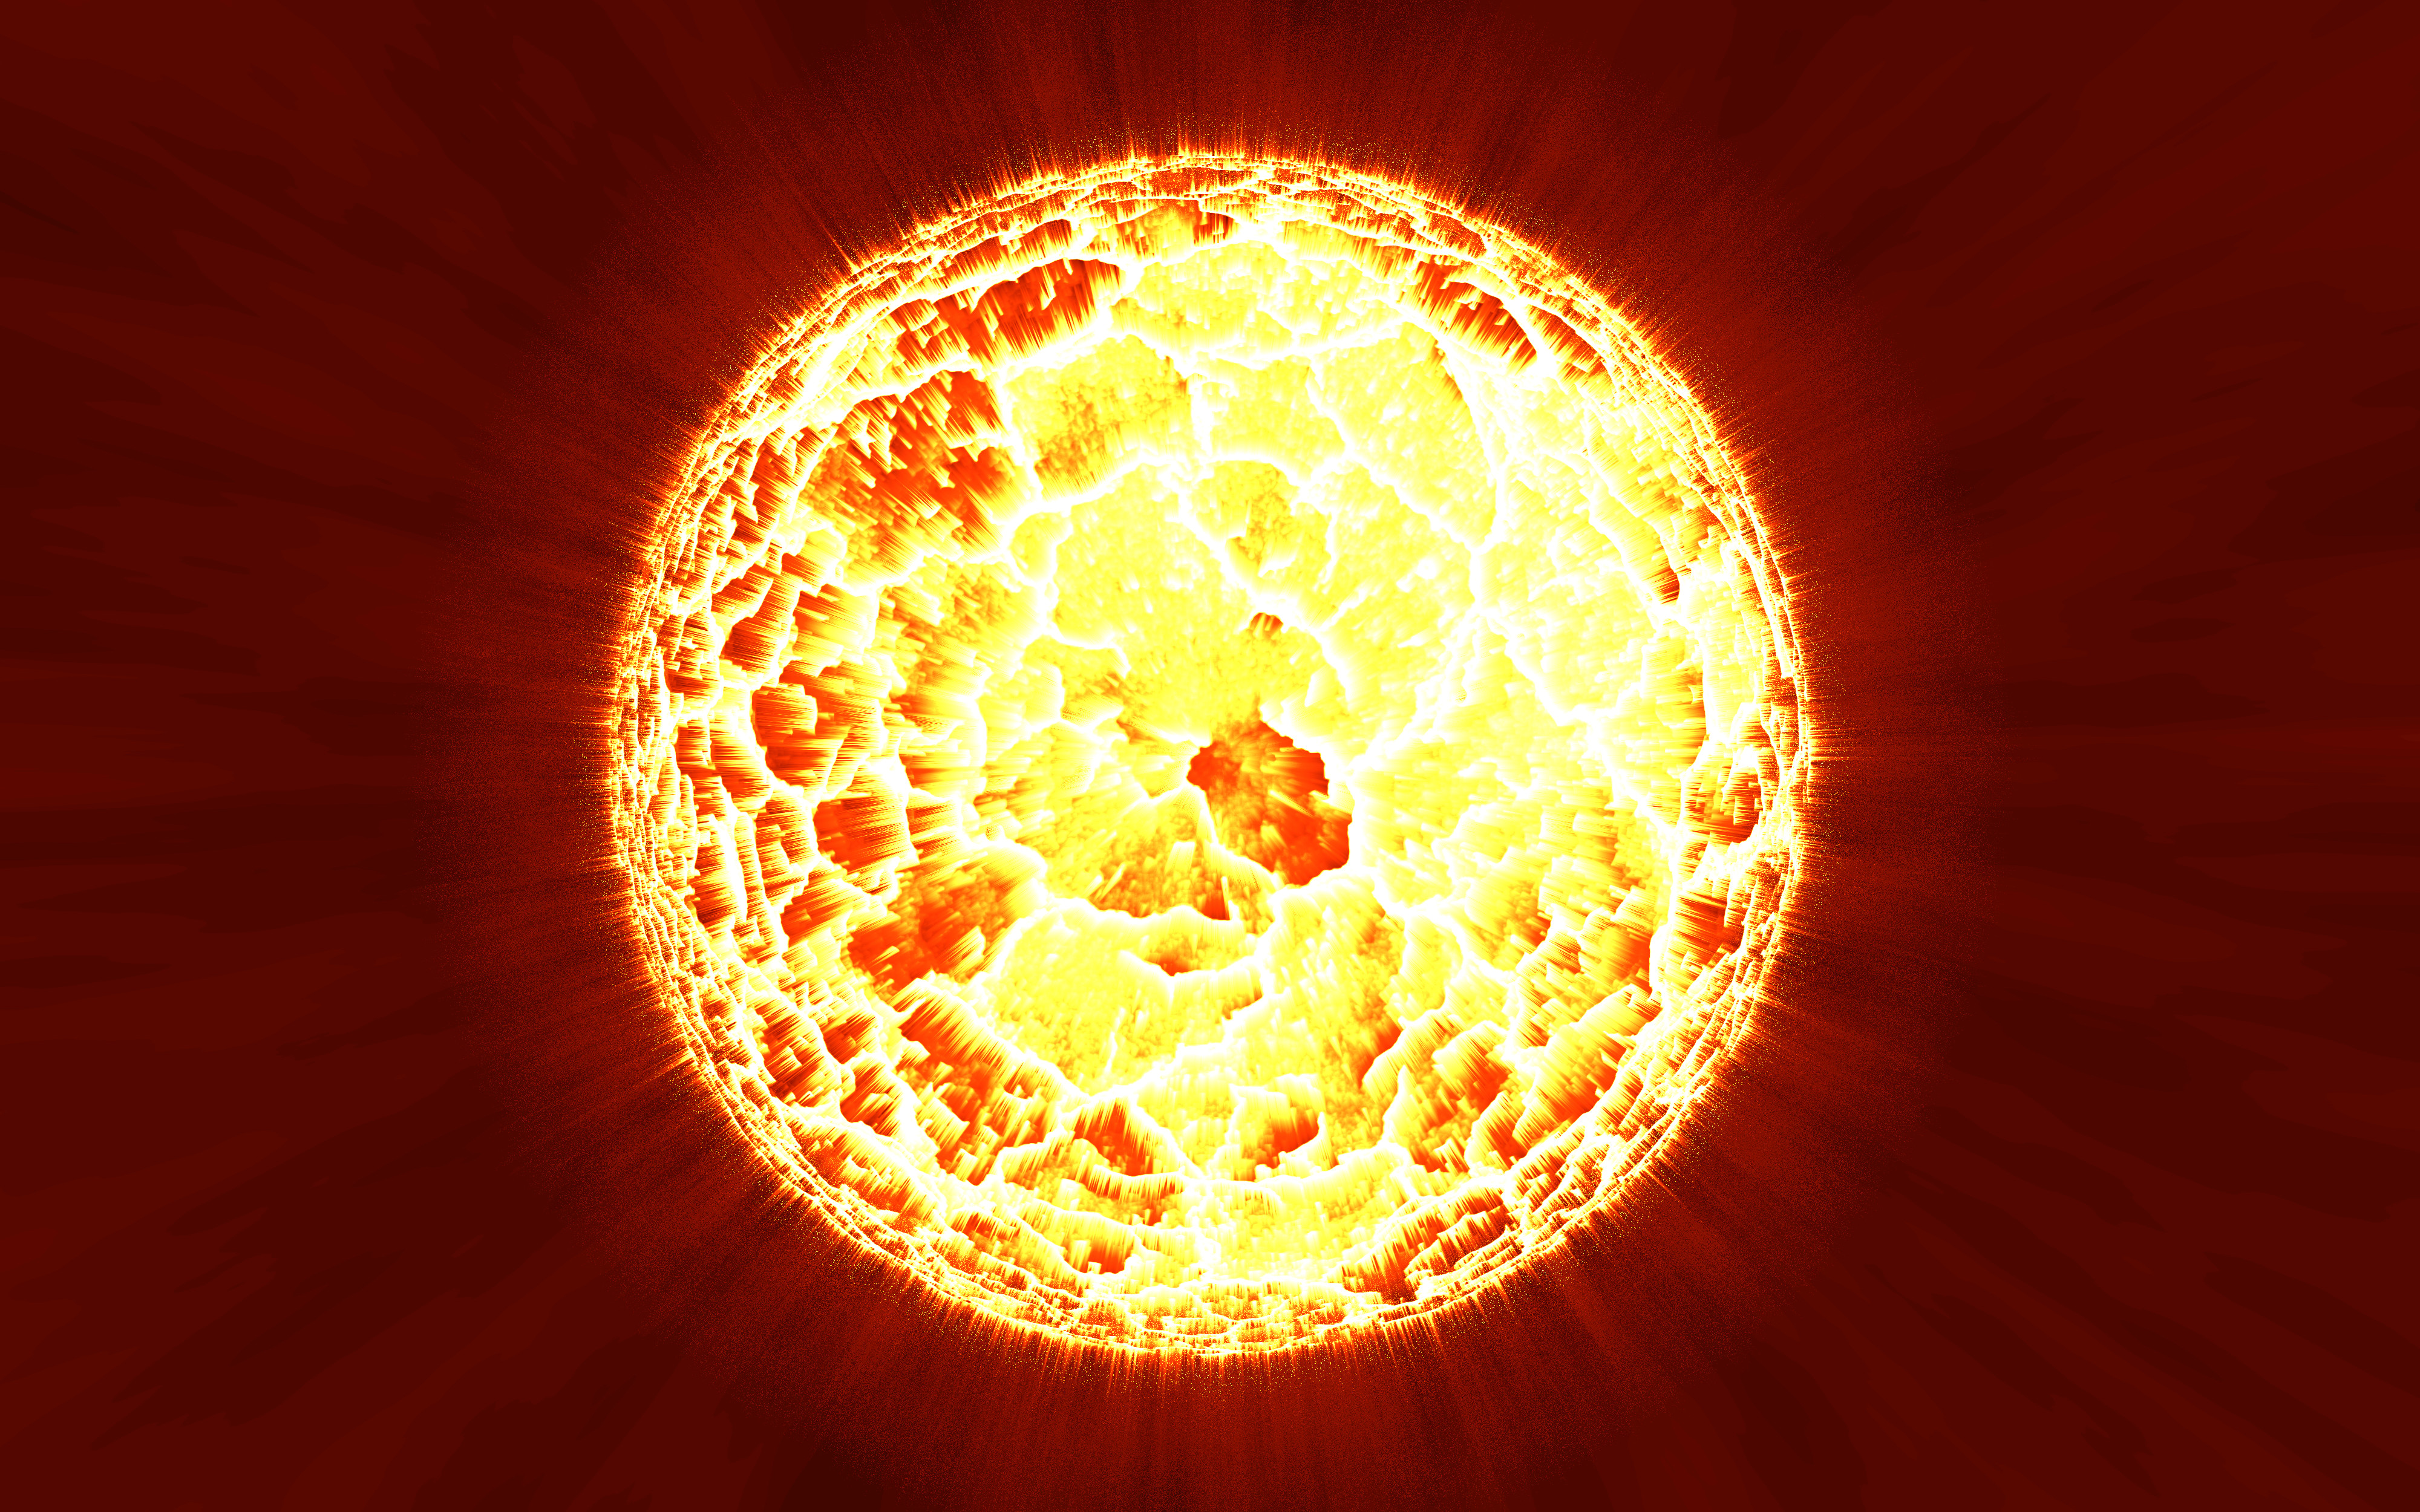 Солнце в космосе рисунок